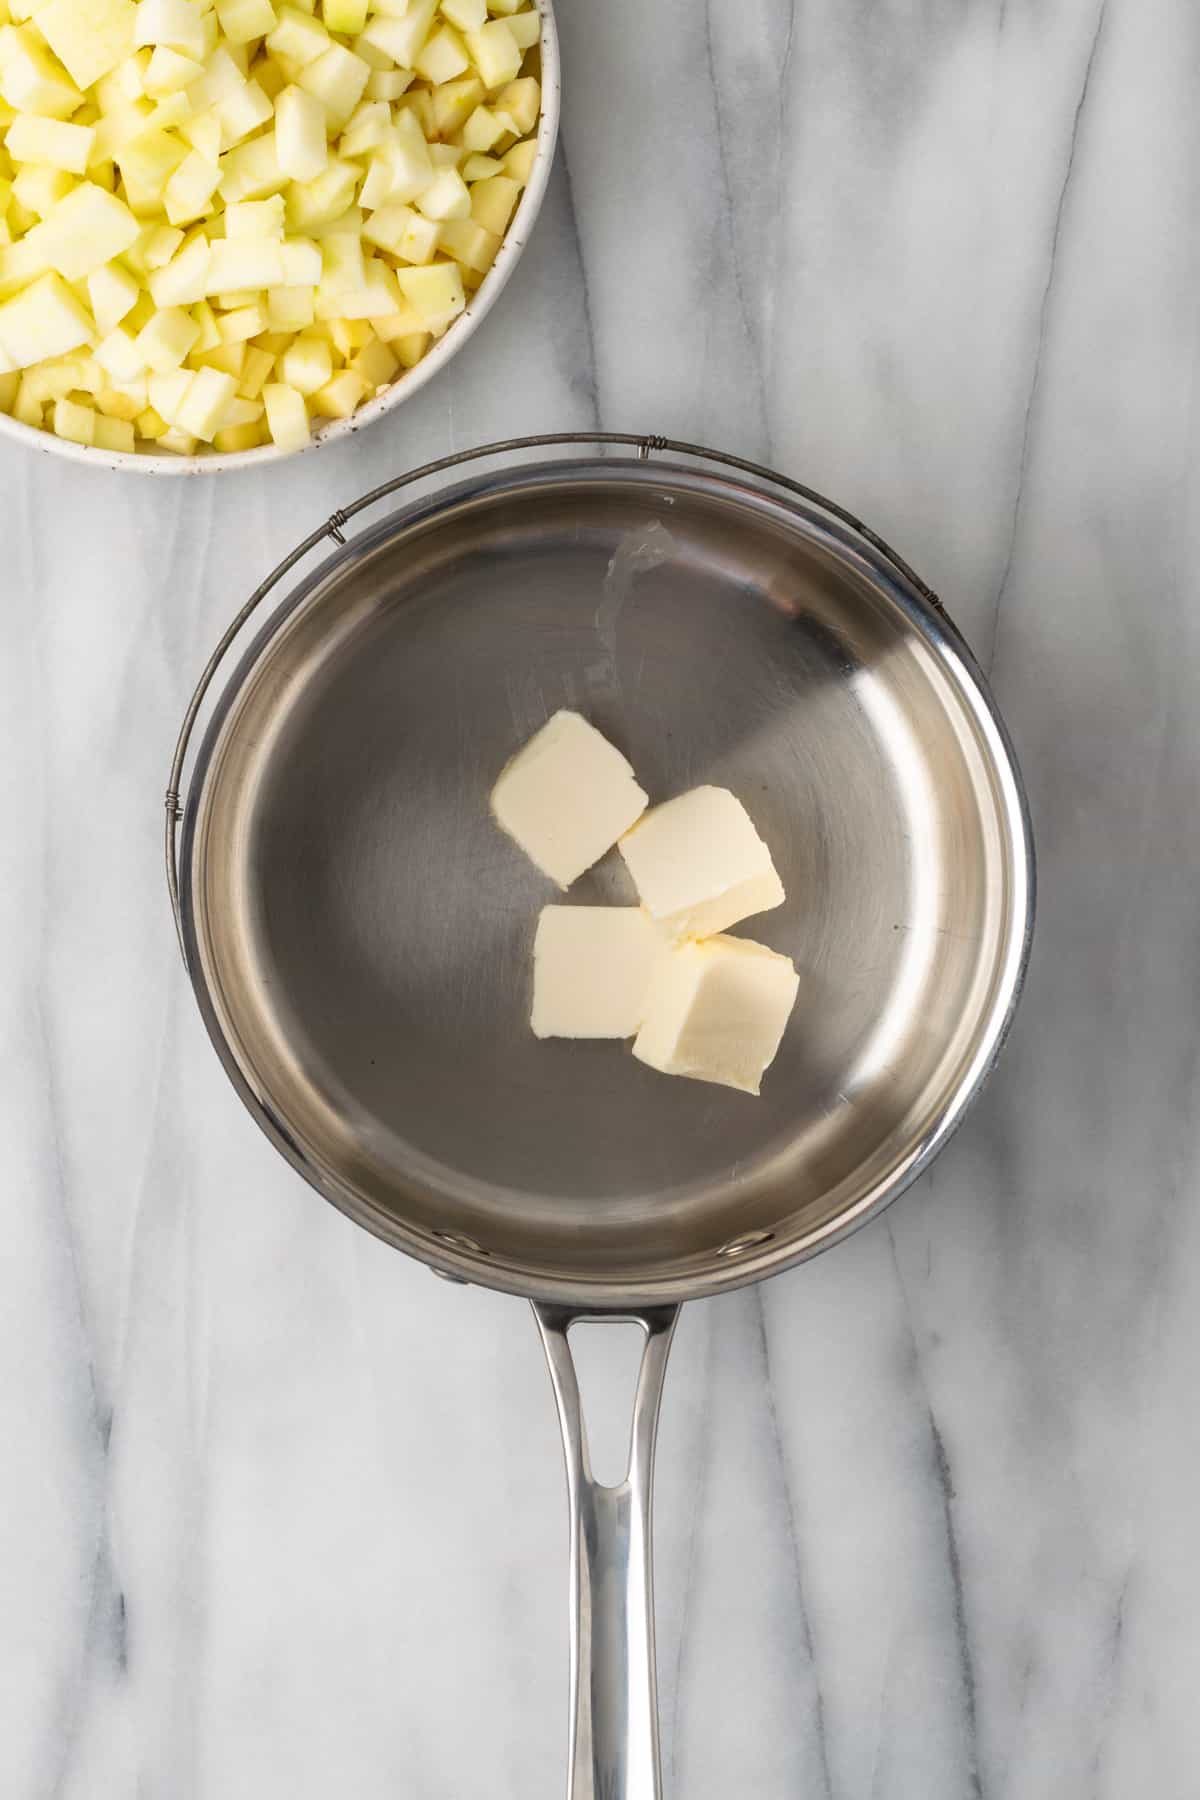 Butter melting in a metal saucepan.